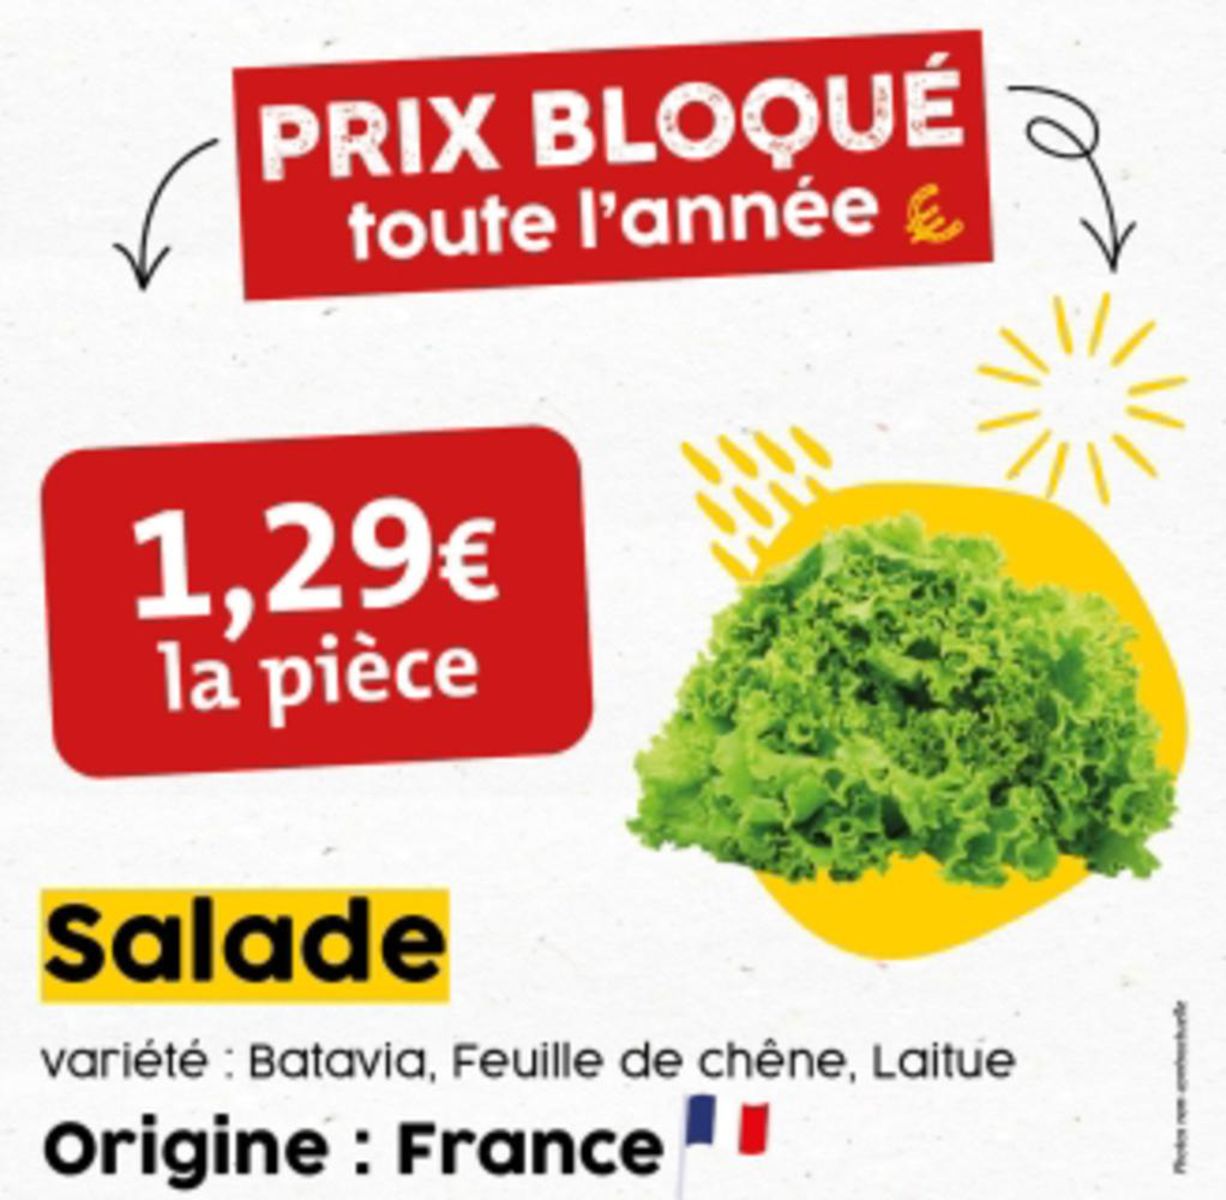 Catalogue 4 fruits et légumes bio à prix bloqué !, page 00006